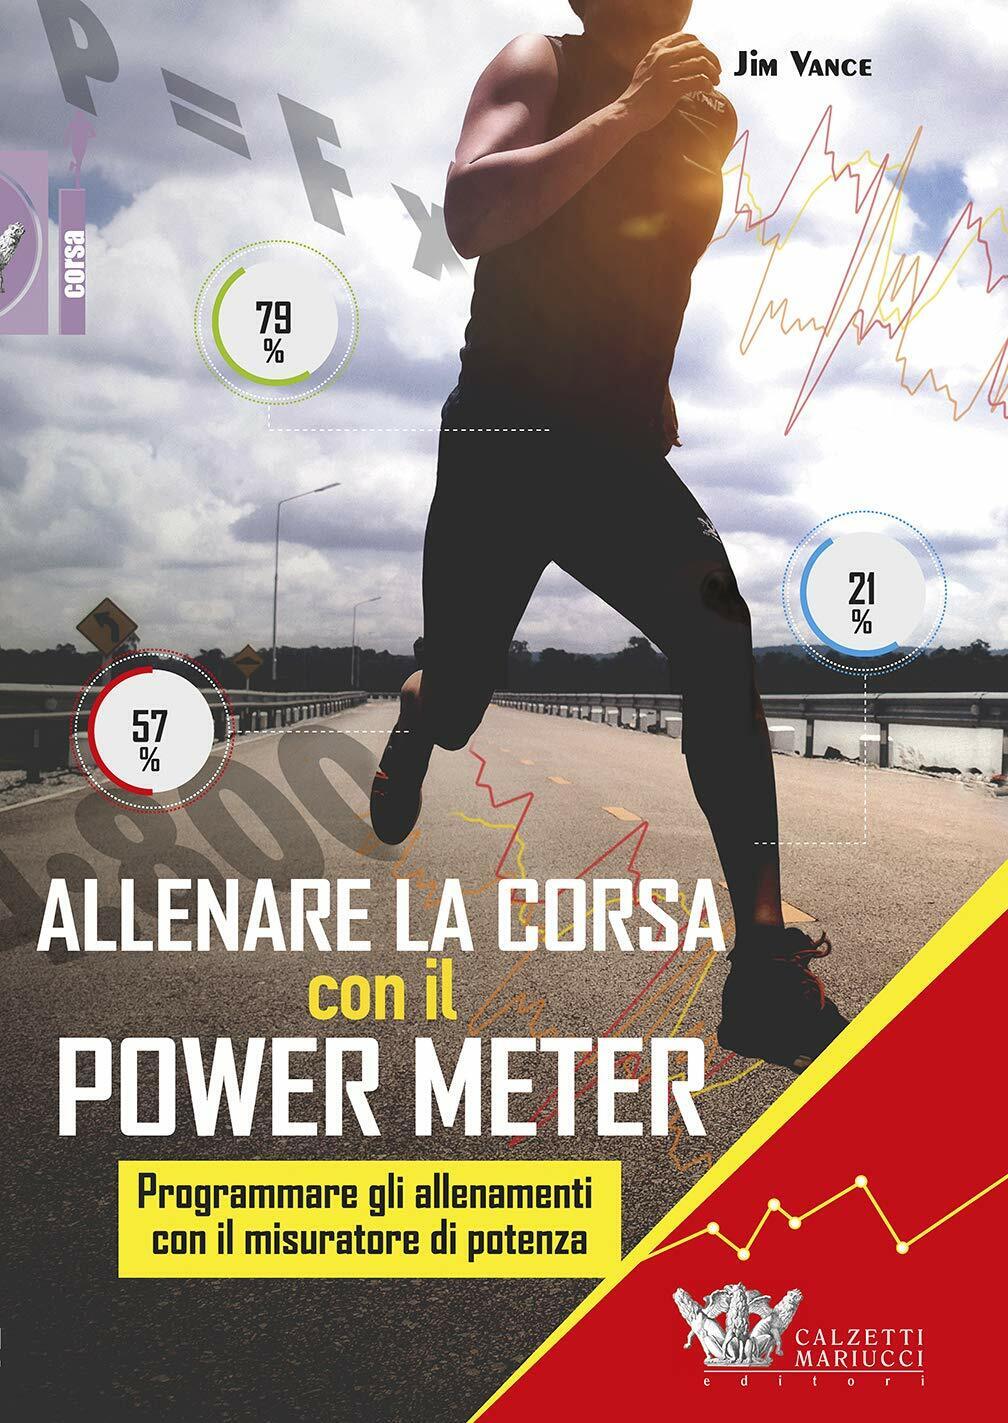 Allenare la corsa con il power meter - Jim Vance - Calzetti Mariucci, 2019 libro usato